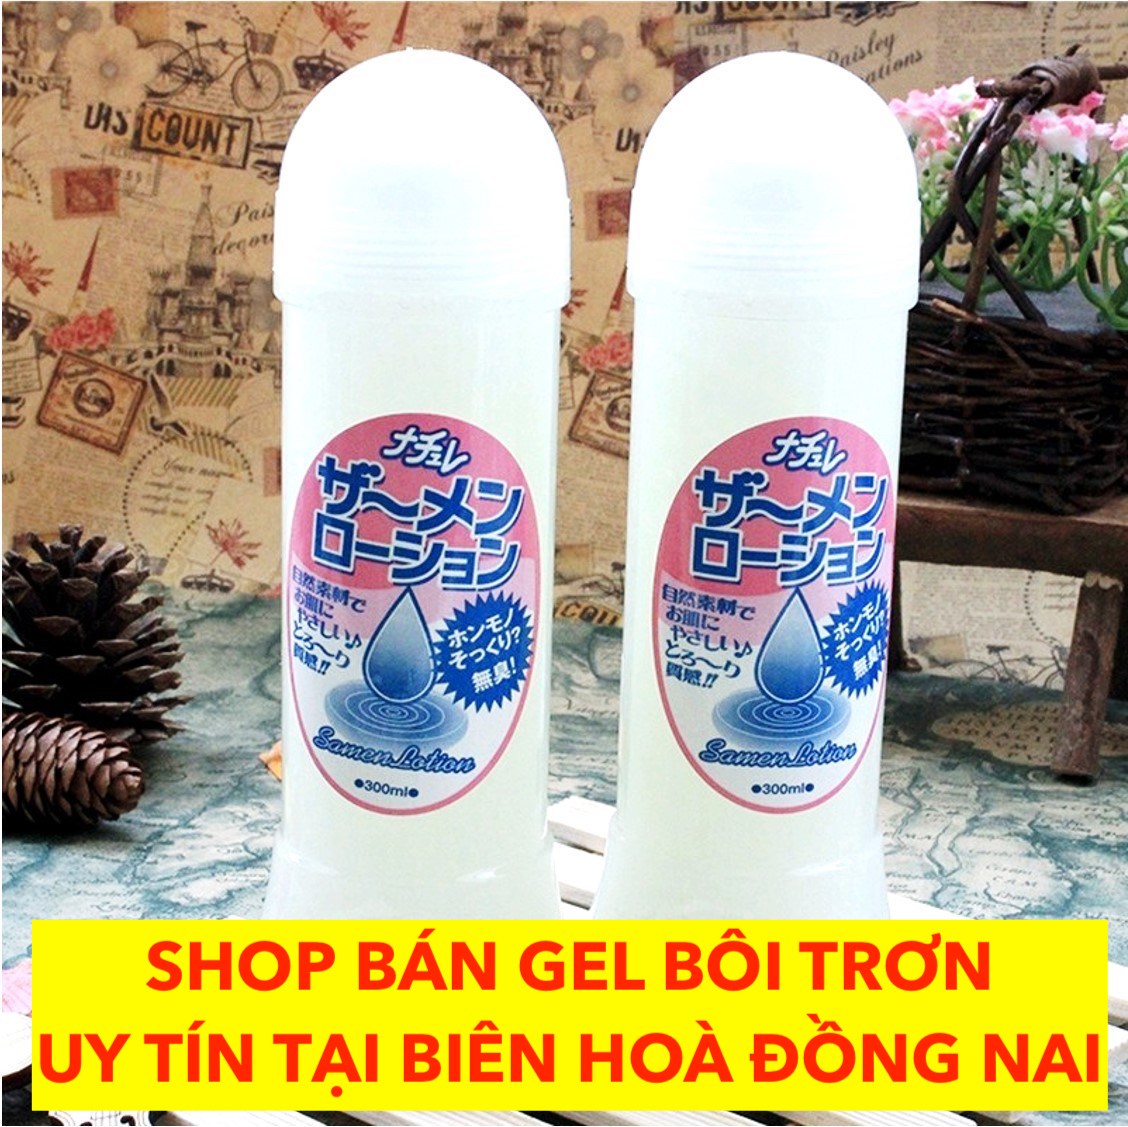 Gel bôi trơn Biên Hòa Đồng Nai shop bán chính hãng giá rẻ